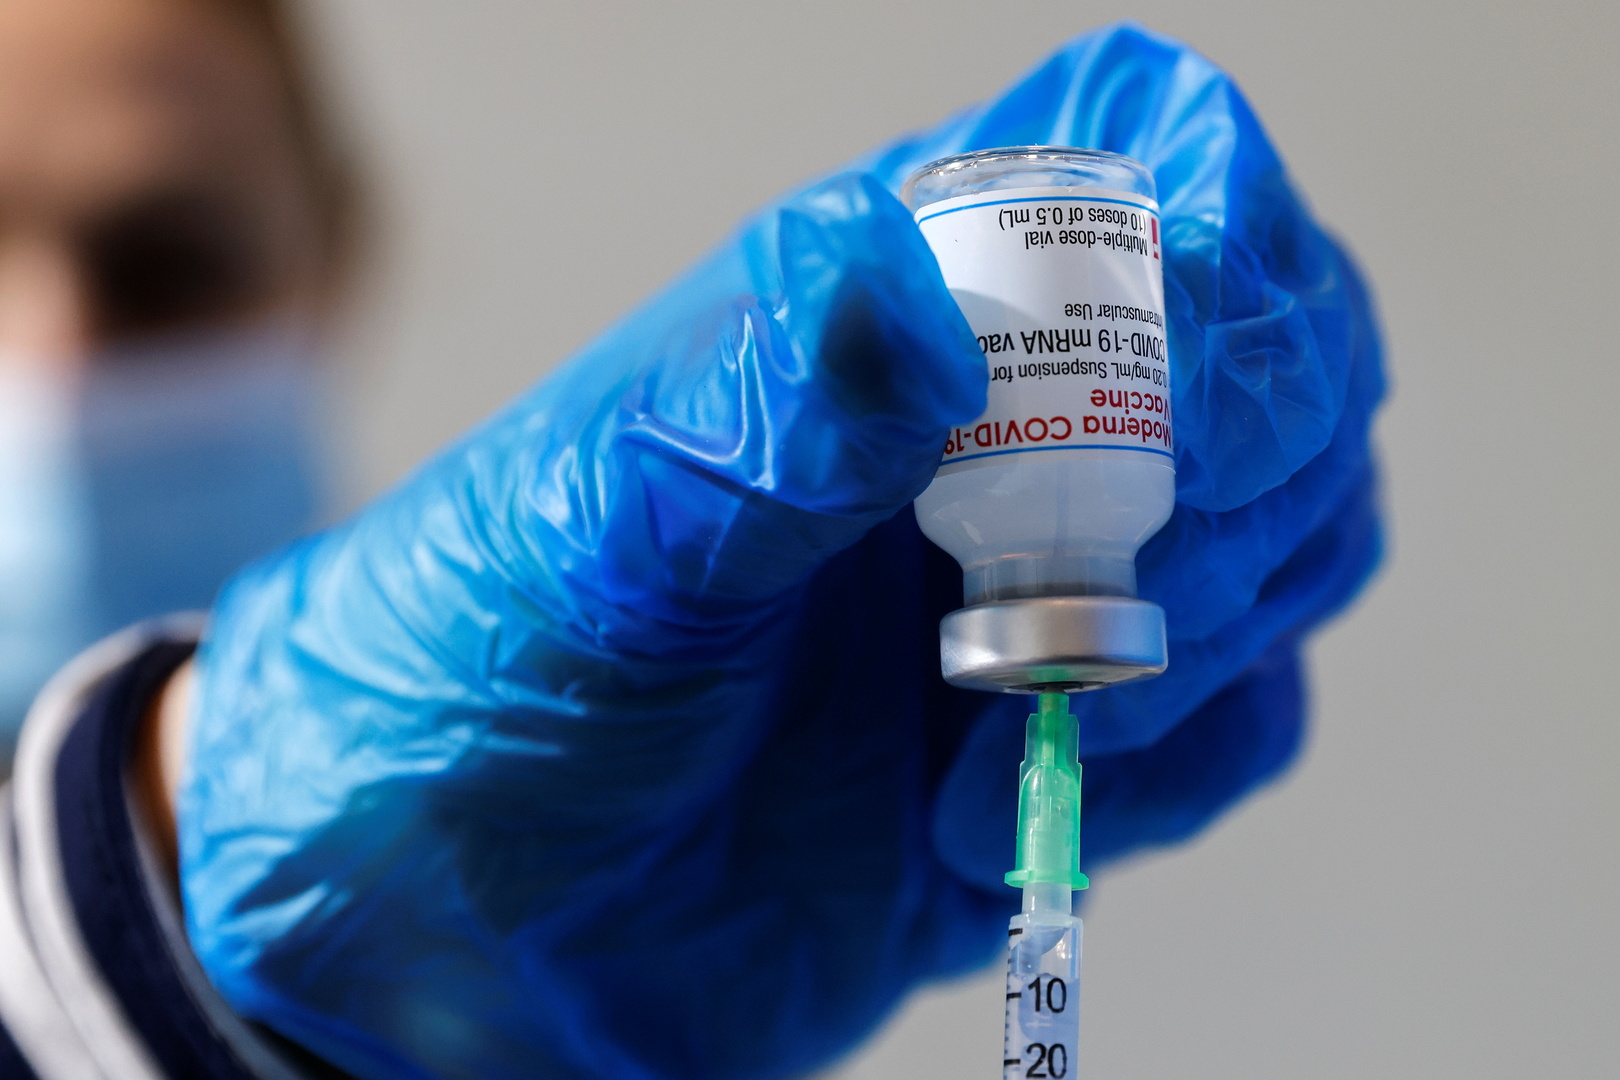 اليونان.. تغيير موعد إعادة التطعيم ضد كورونا من 6 أشهر إلى 3